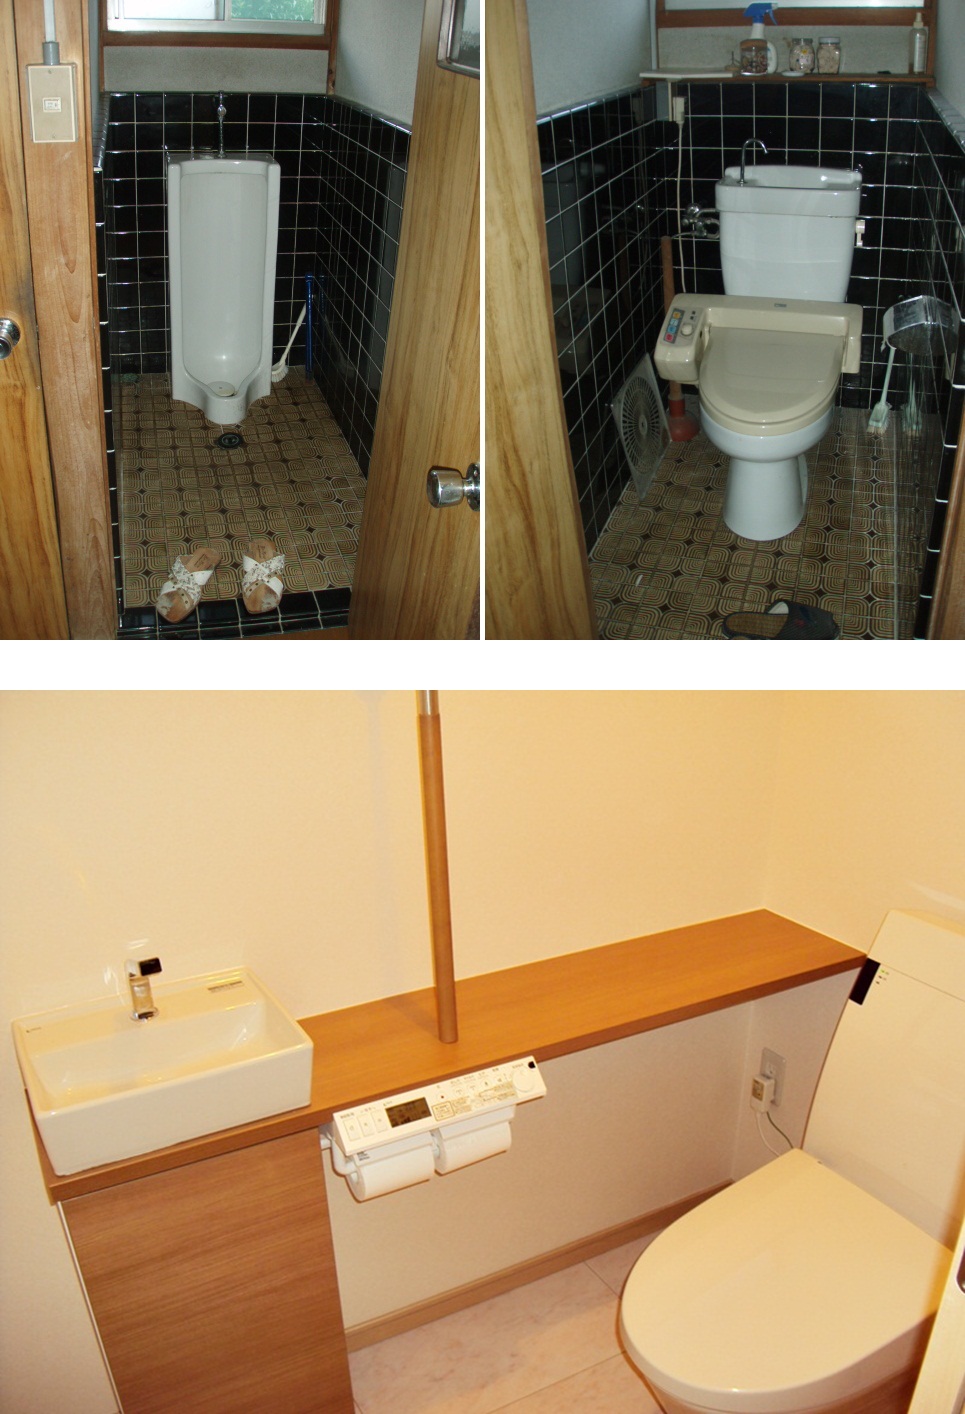 トイレは、LIXILのアスティオを採用しました。最新のシャワー一体型トイレと手洗いは手をかざせば水が出る自動水栓を使用し、機能を充実させました。